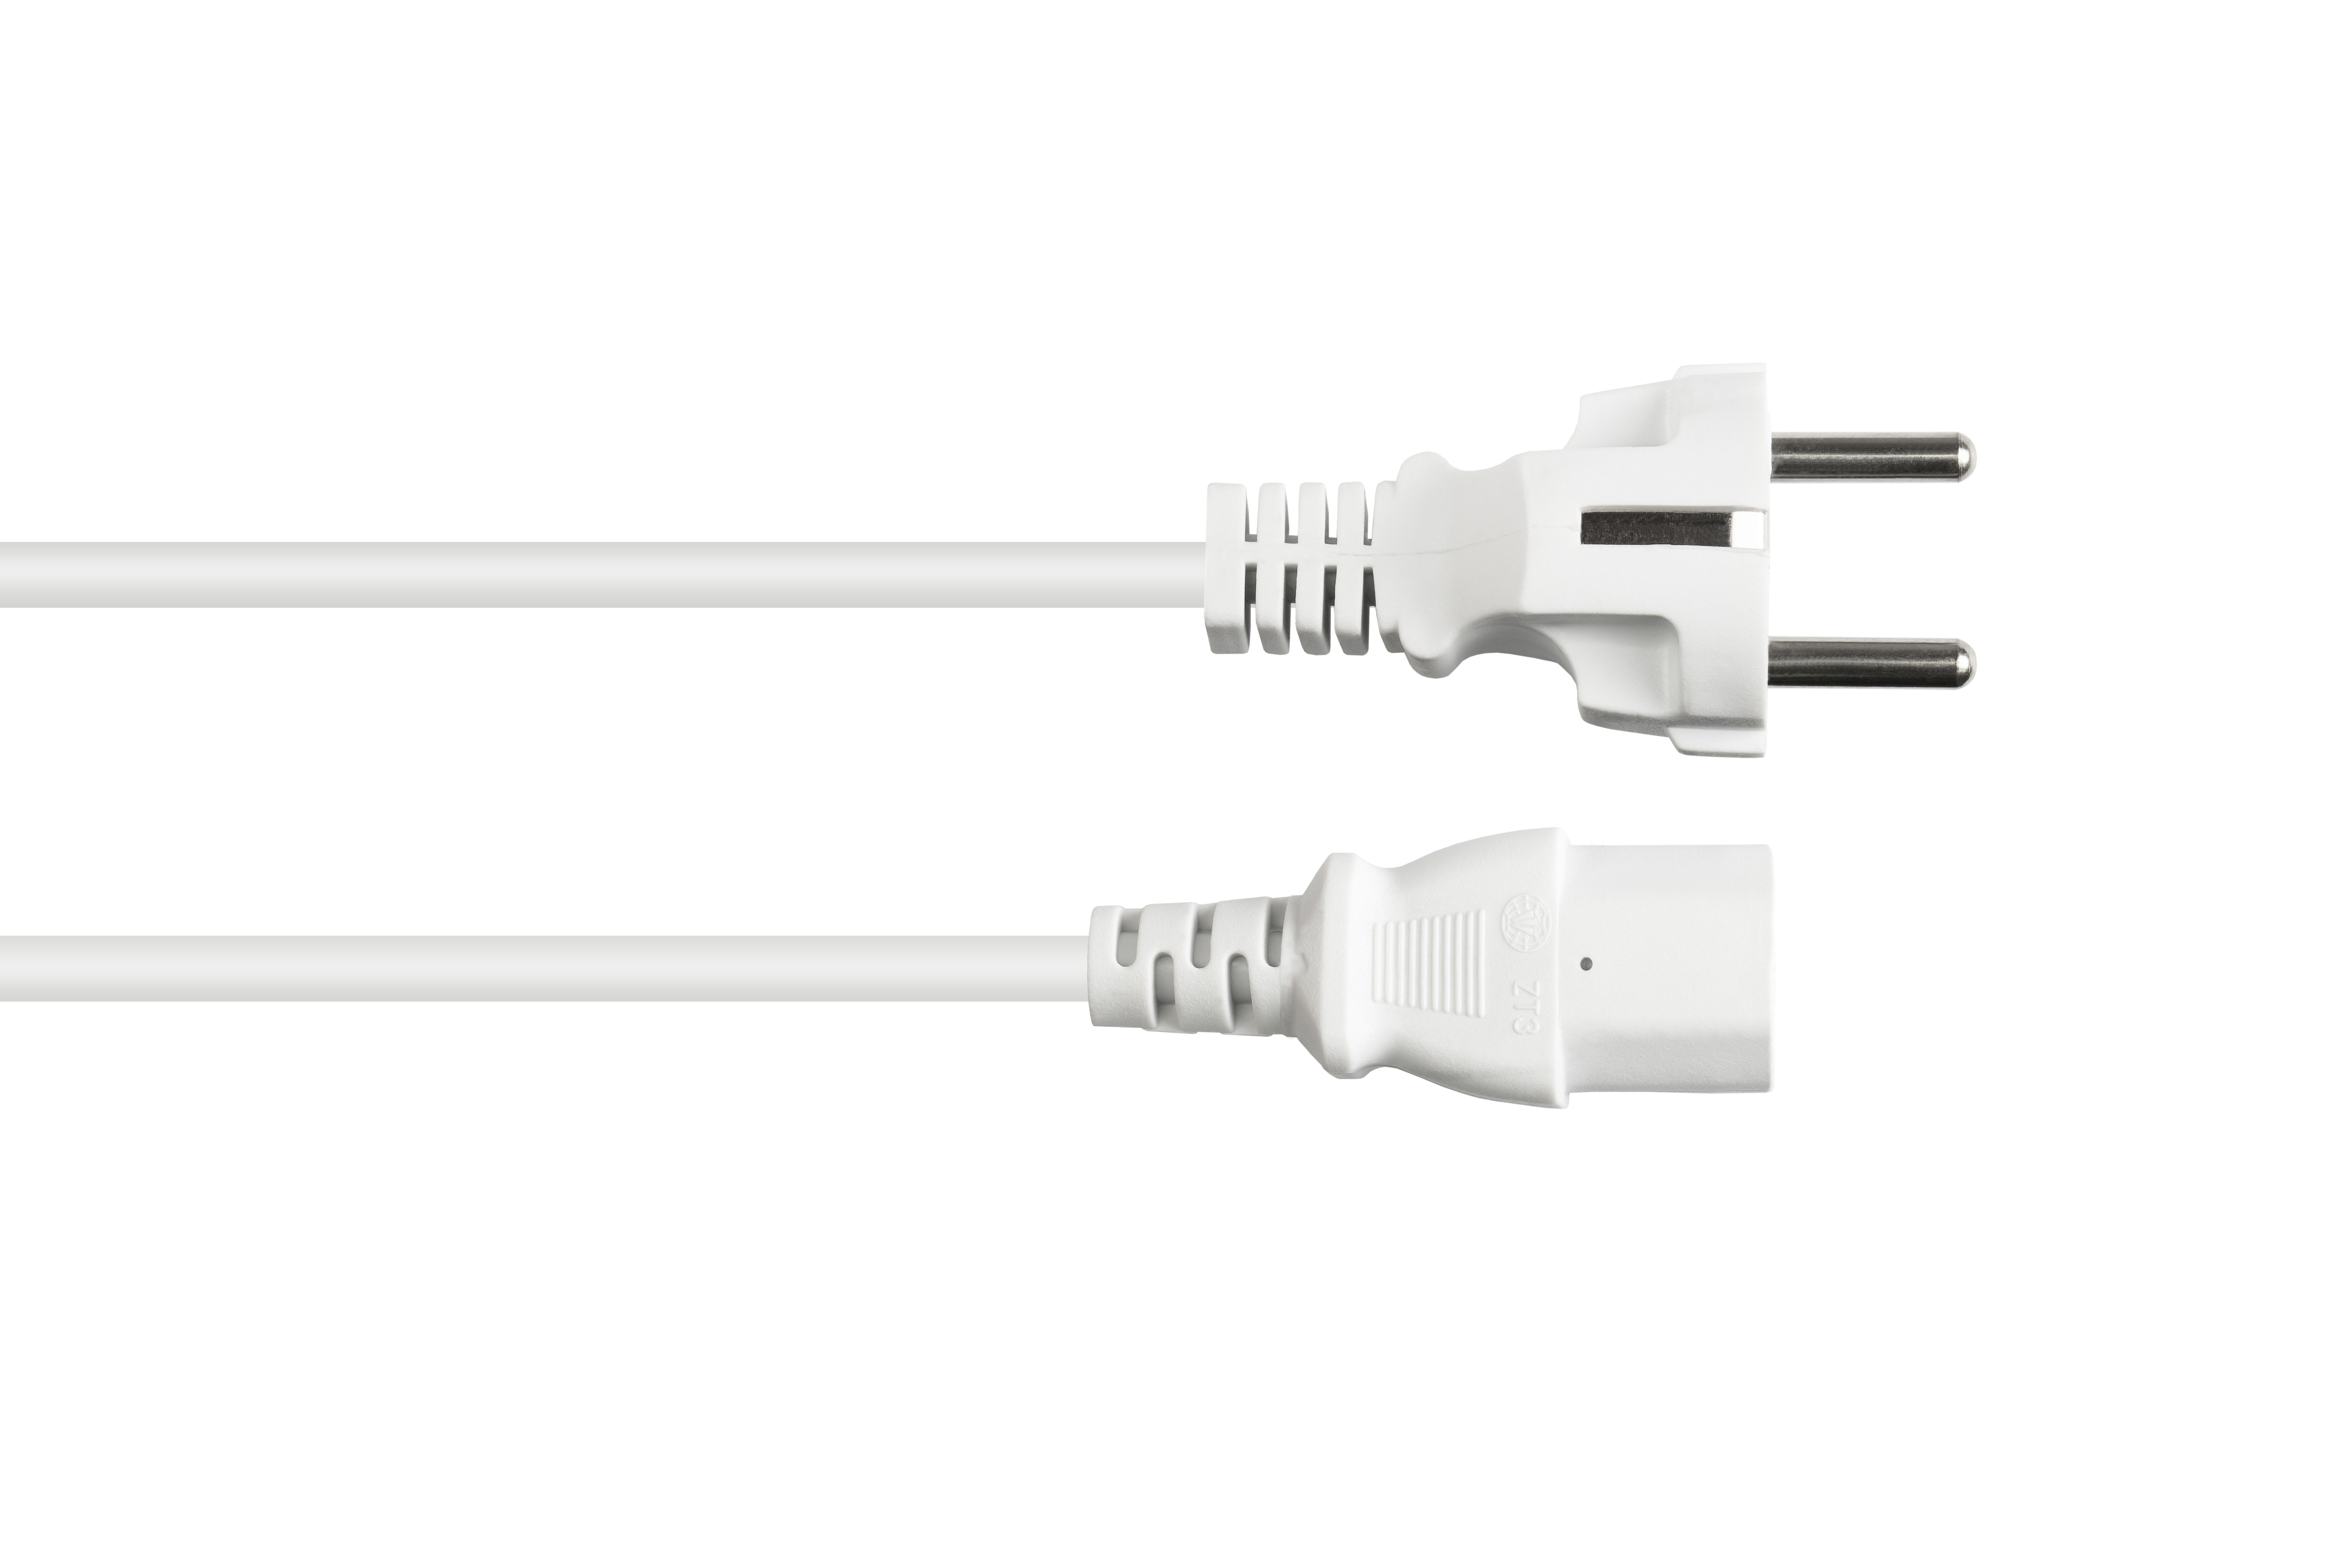 7/7, Stromkabel, gerade) 0,75 mm² weiß C13 weiß, CONNECTIONS Schutzkontakt-Stecker Typ an E+F (gerade), (CEE GOOD